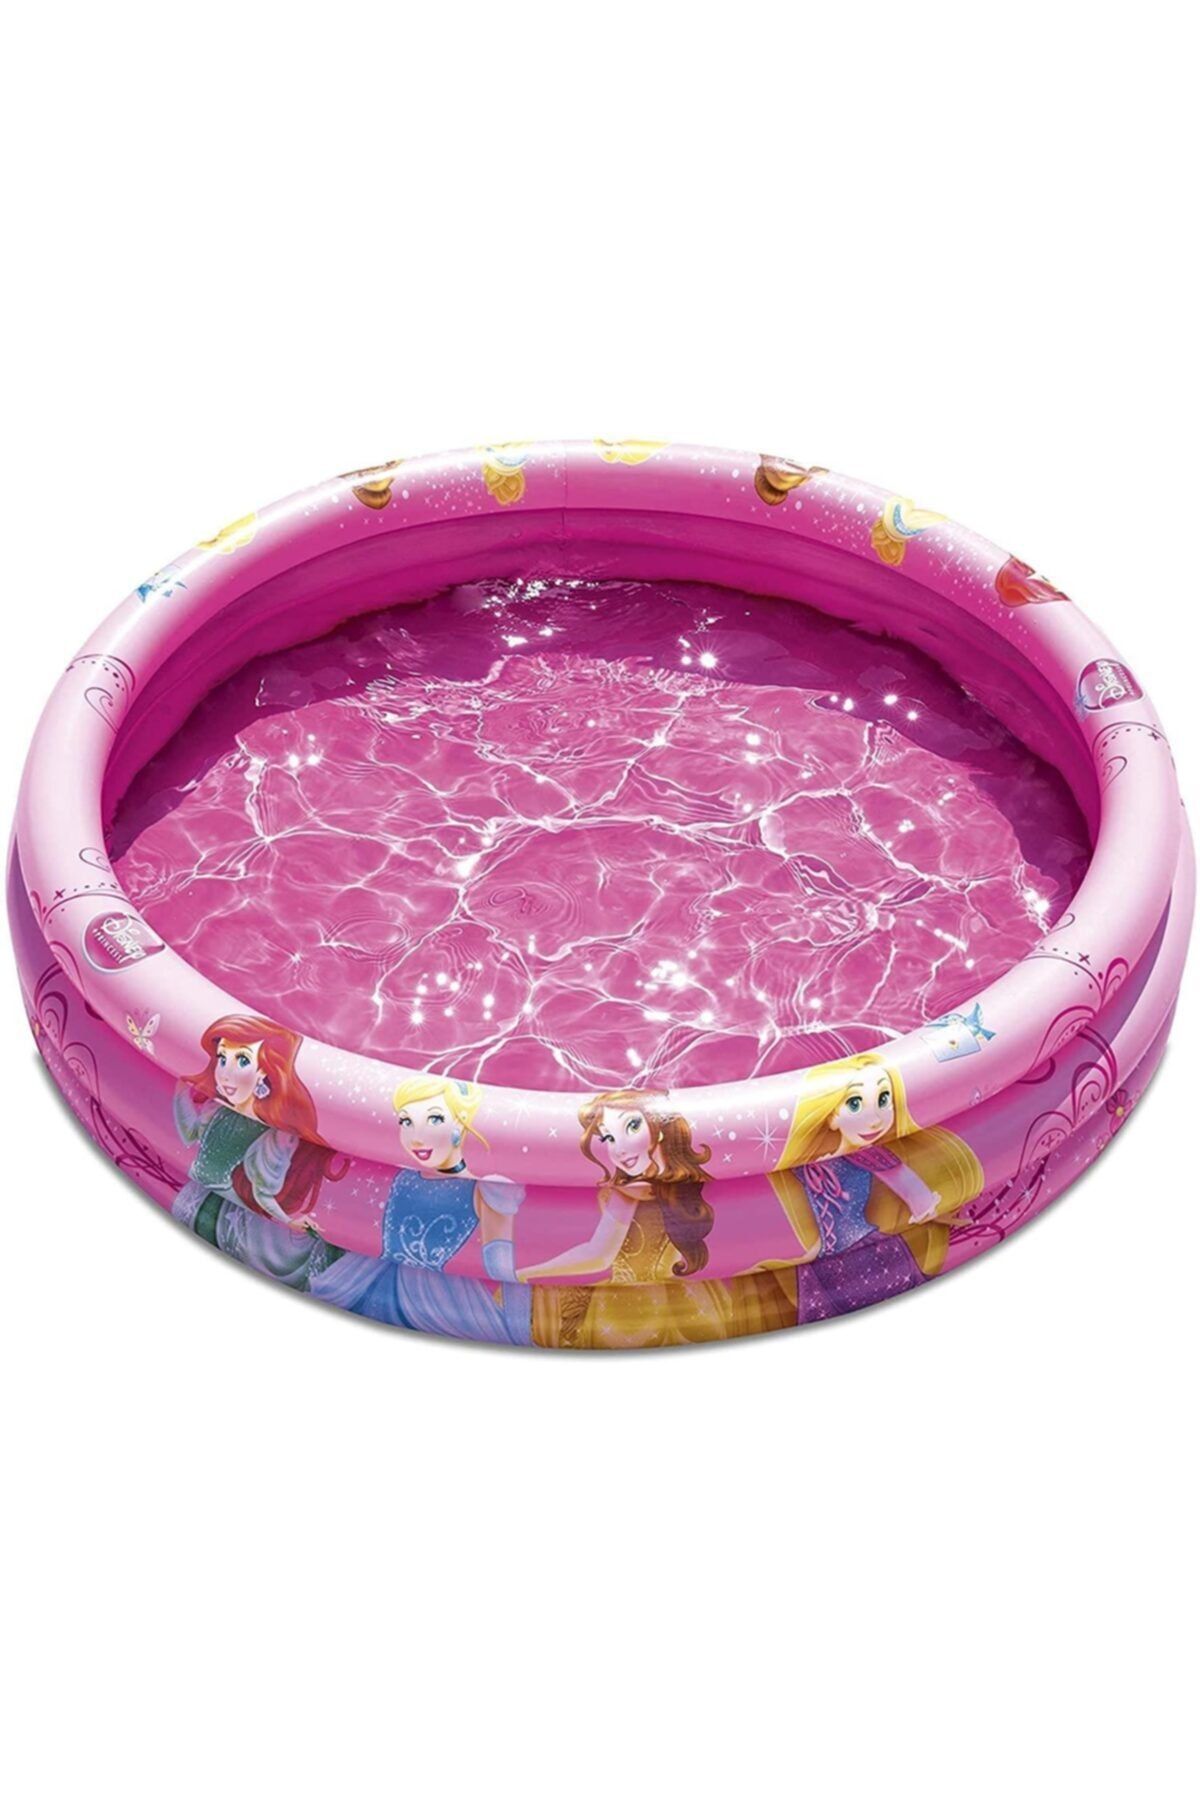 Bestway Pompalı- 3 Boğum Disney Princess Temalı Şişme Çocuk Havuzu